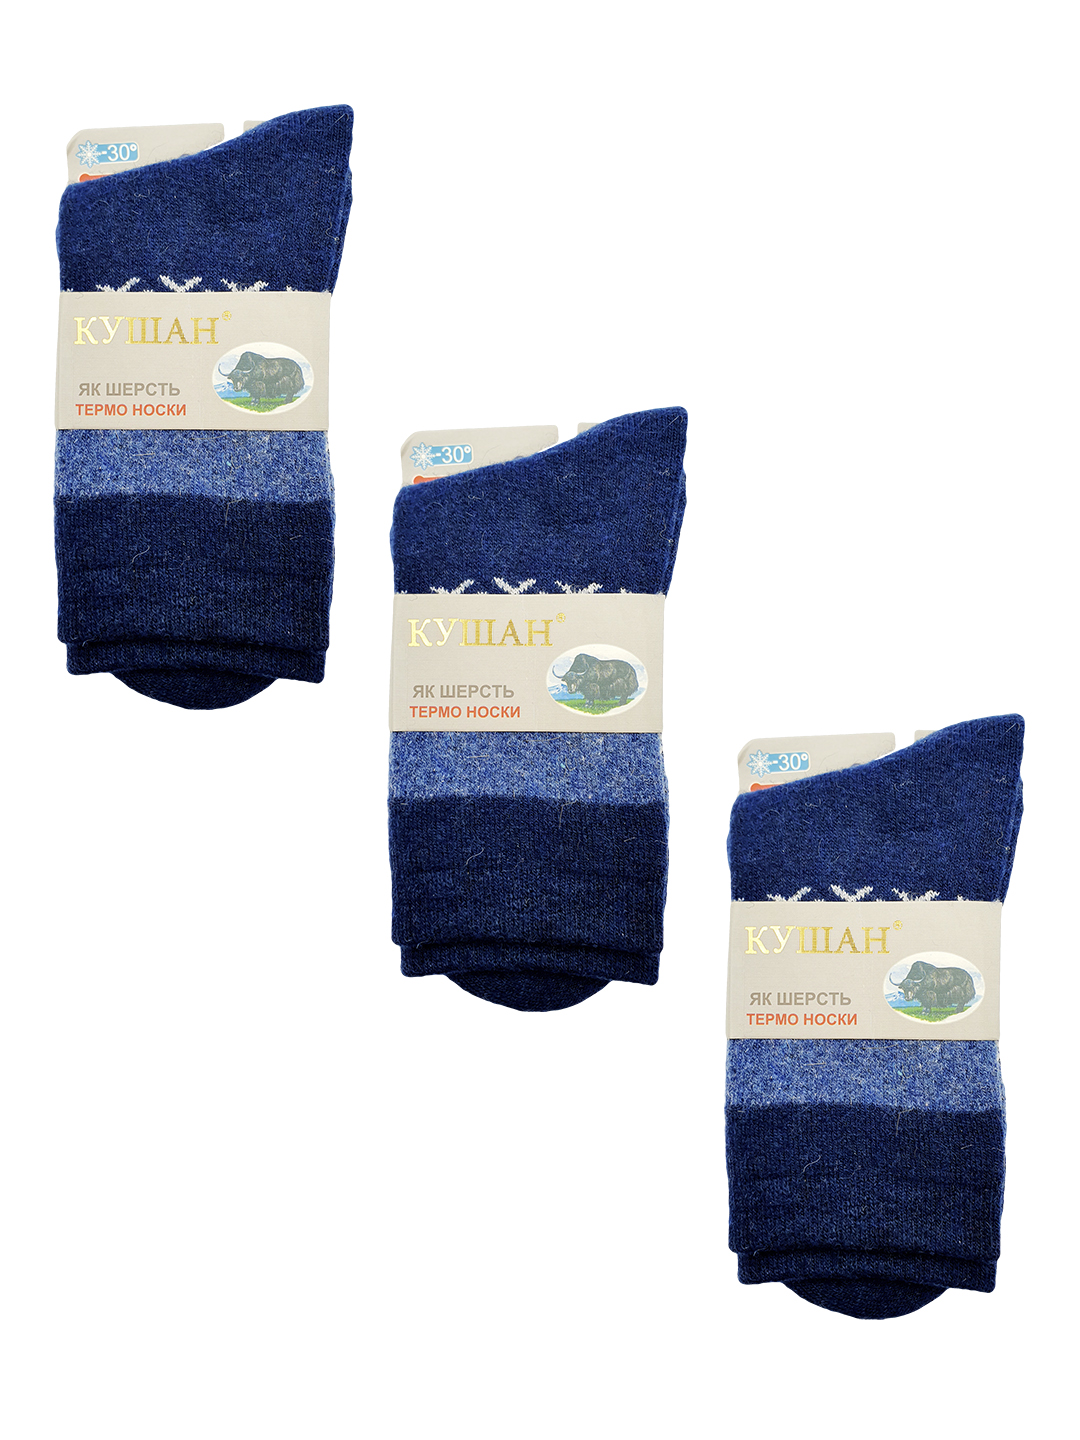 Комплект носков мужских кушан A1009 синих 41-45